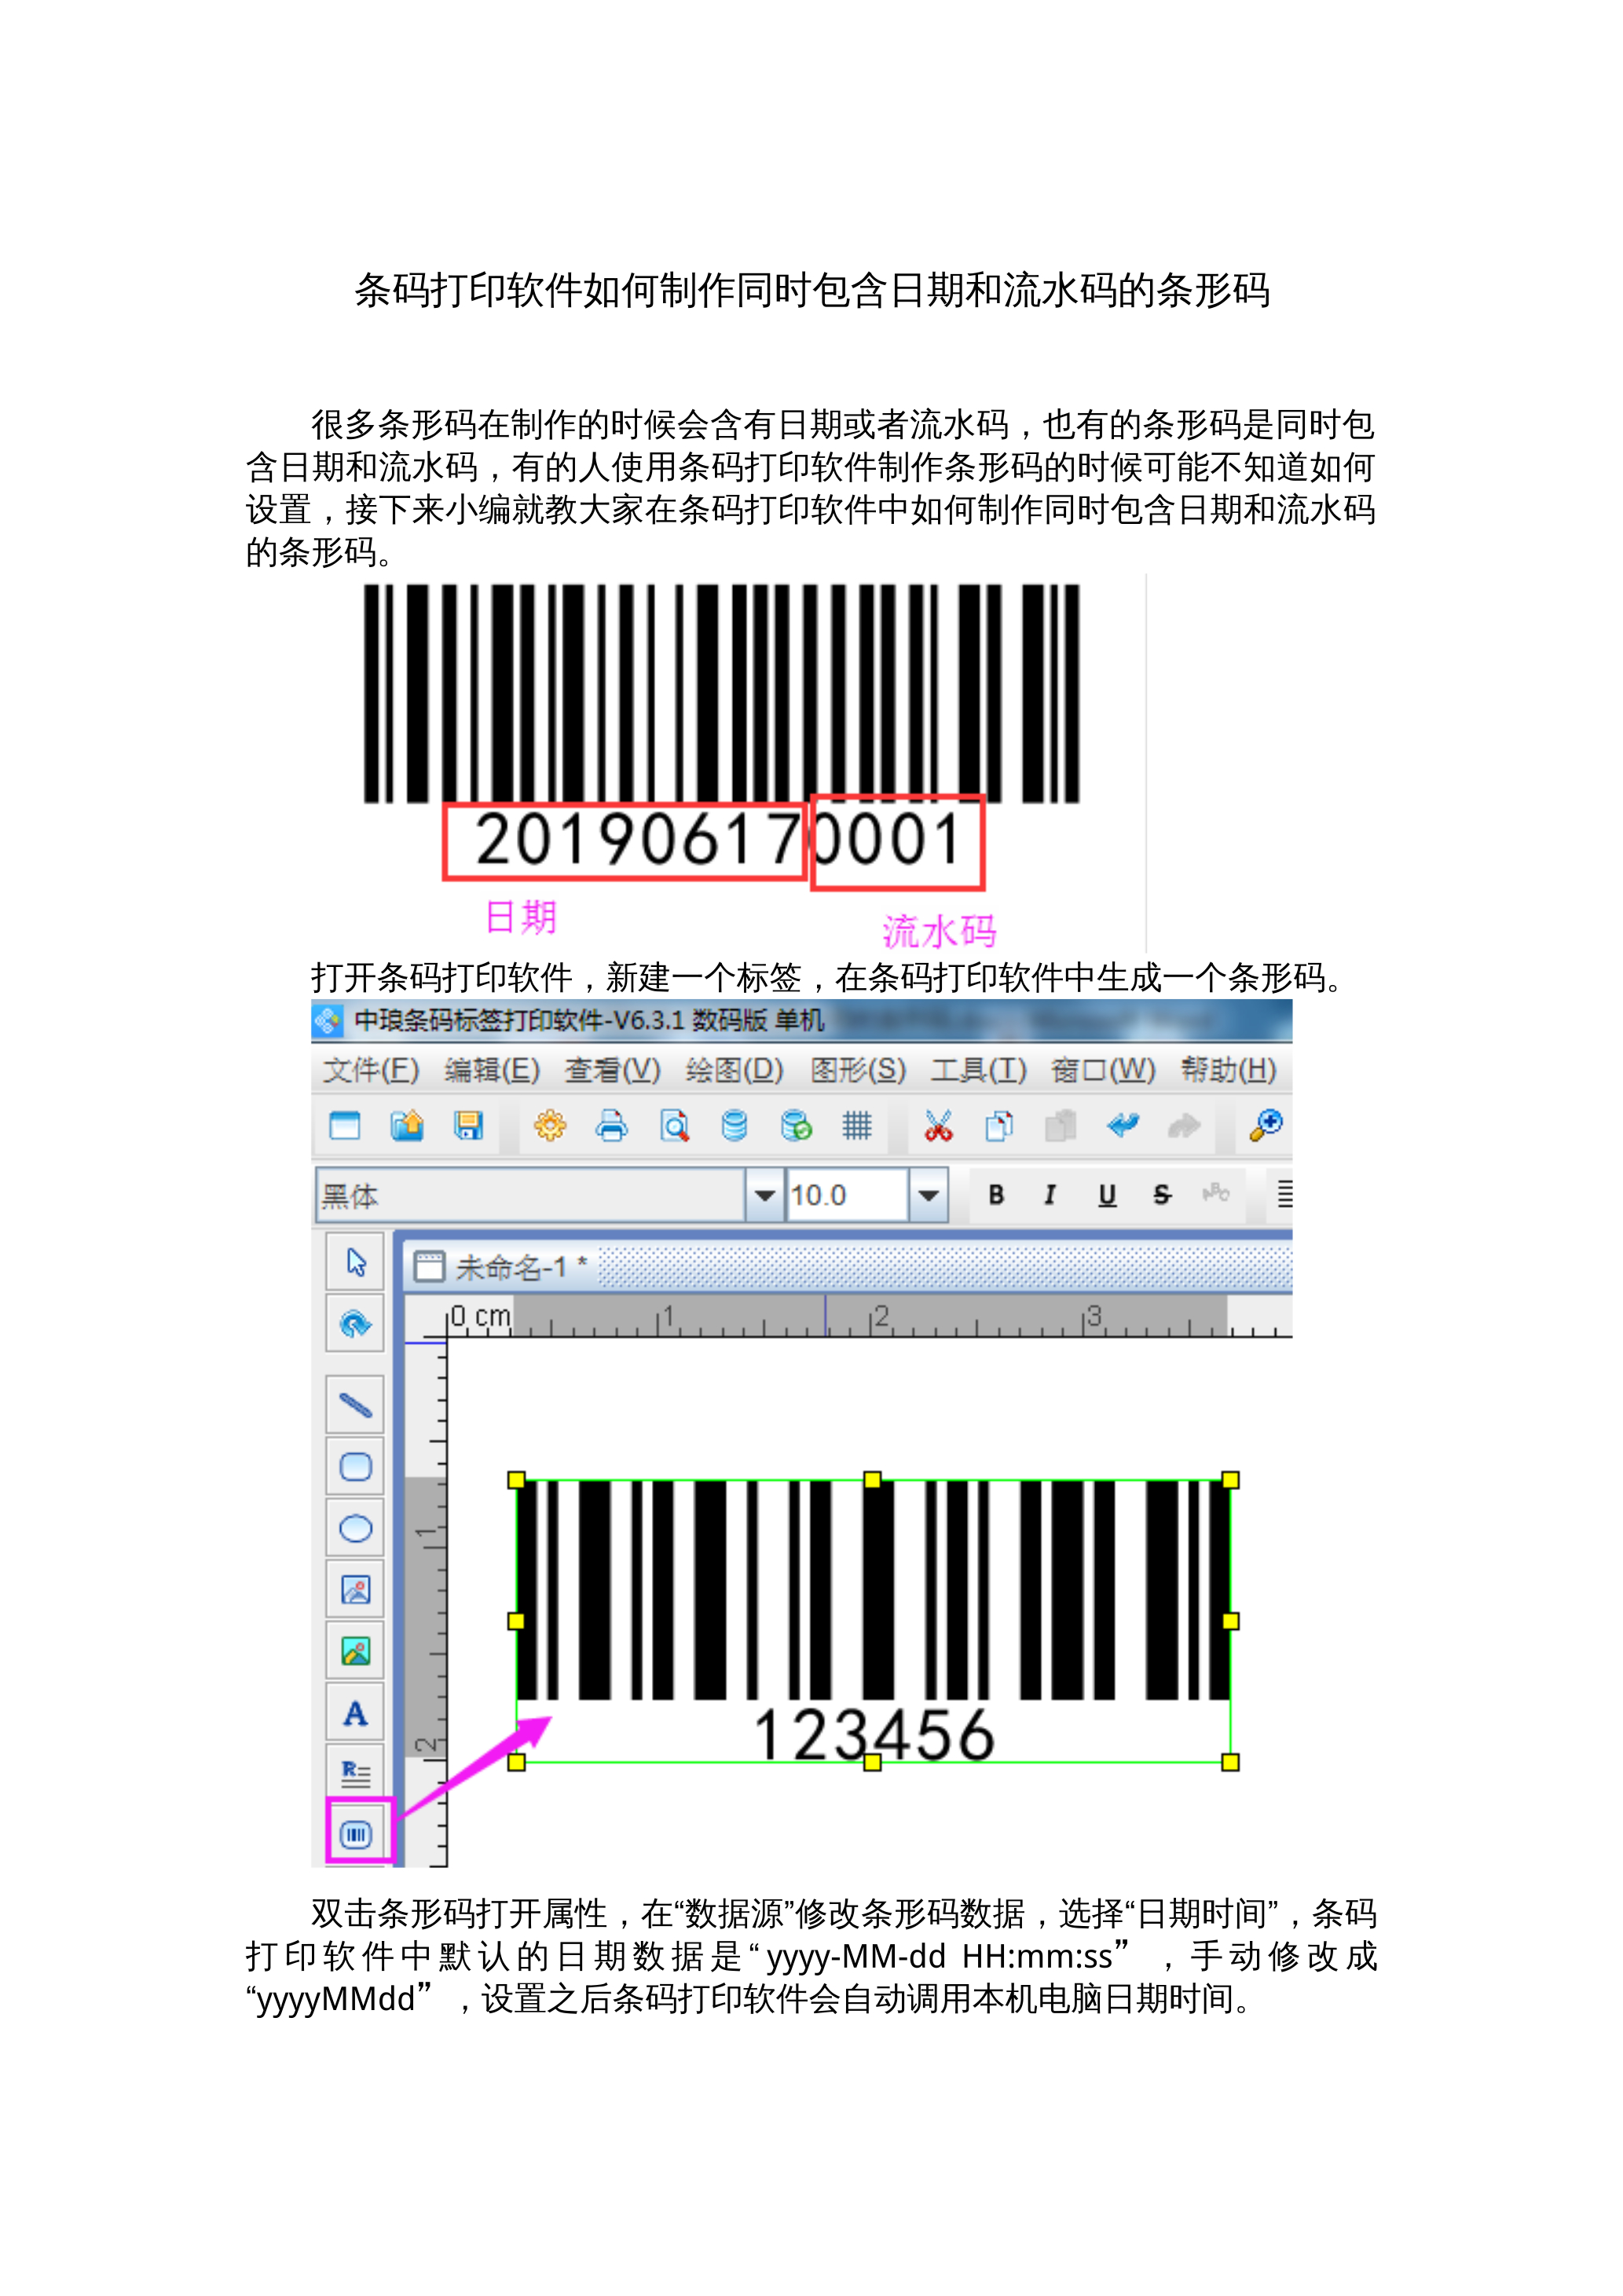 条码打印软件如何制作同时包含日期和流水码的条形码 封面